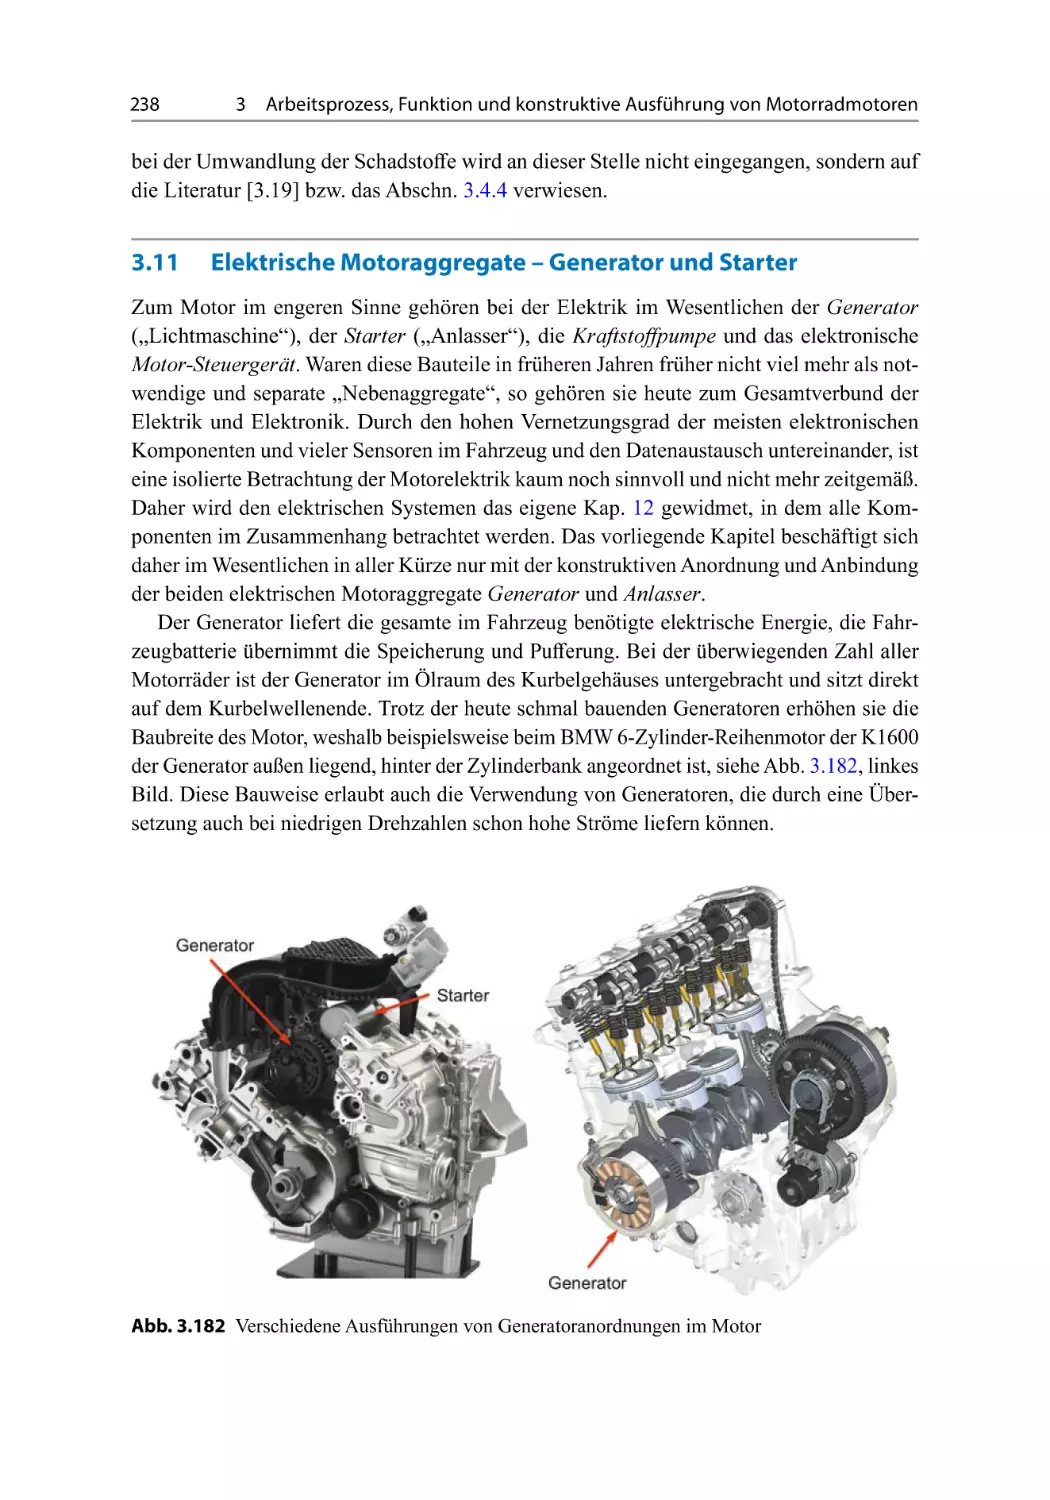 3.11 Elektrische Motoraggregate – Generator und Starter